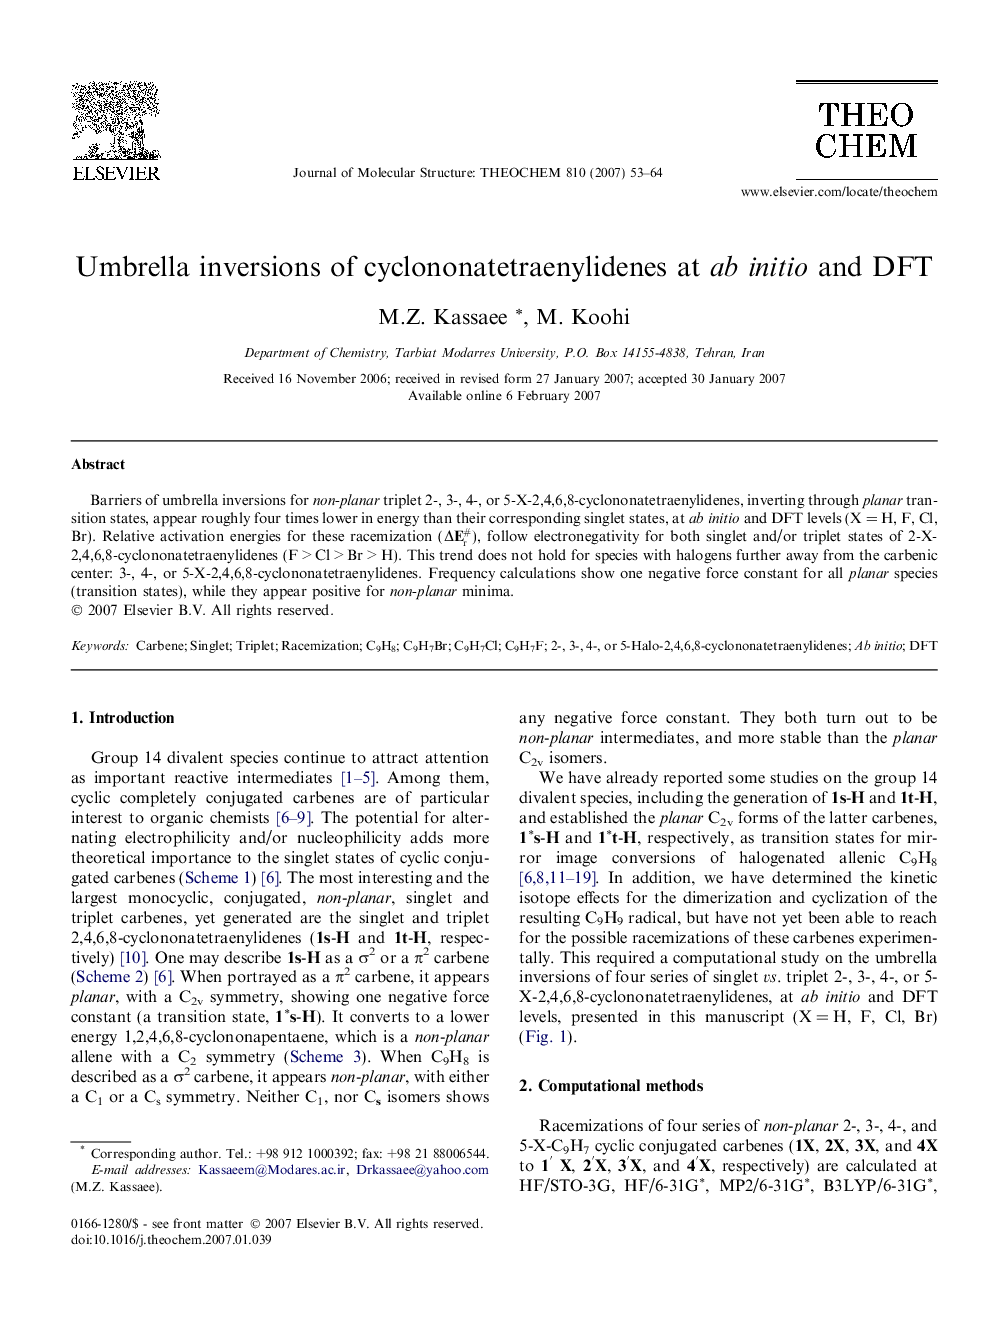 Umbrella inversions of cyclononatetraenylidenes at ab initio and DFT